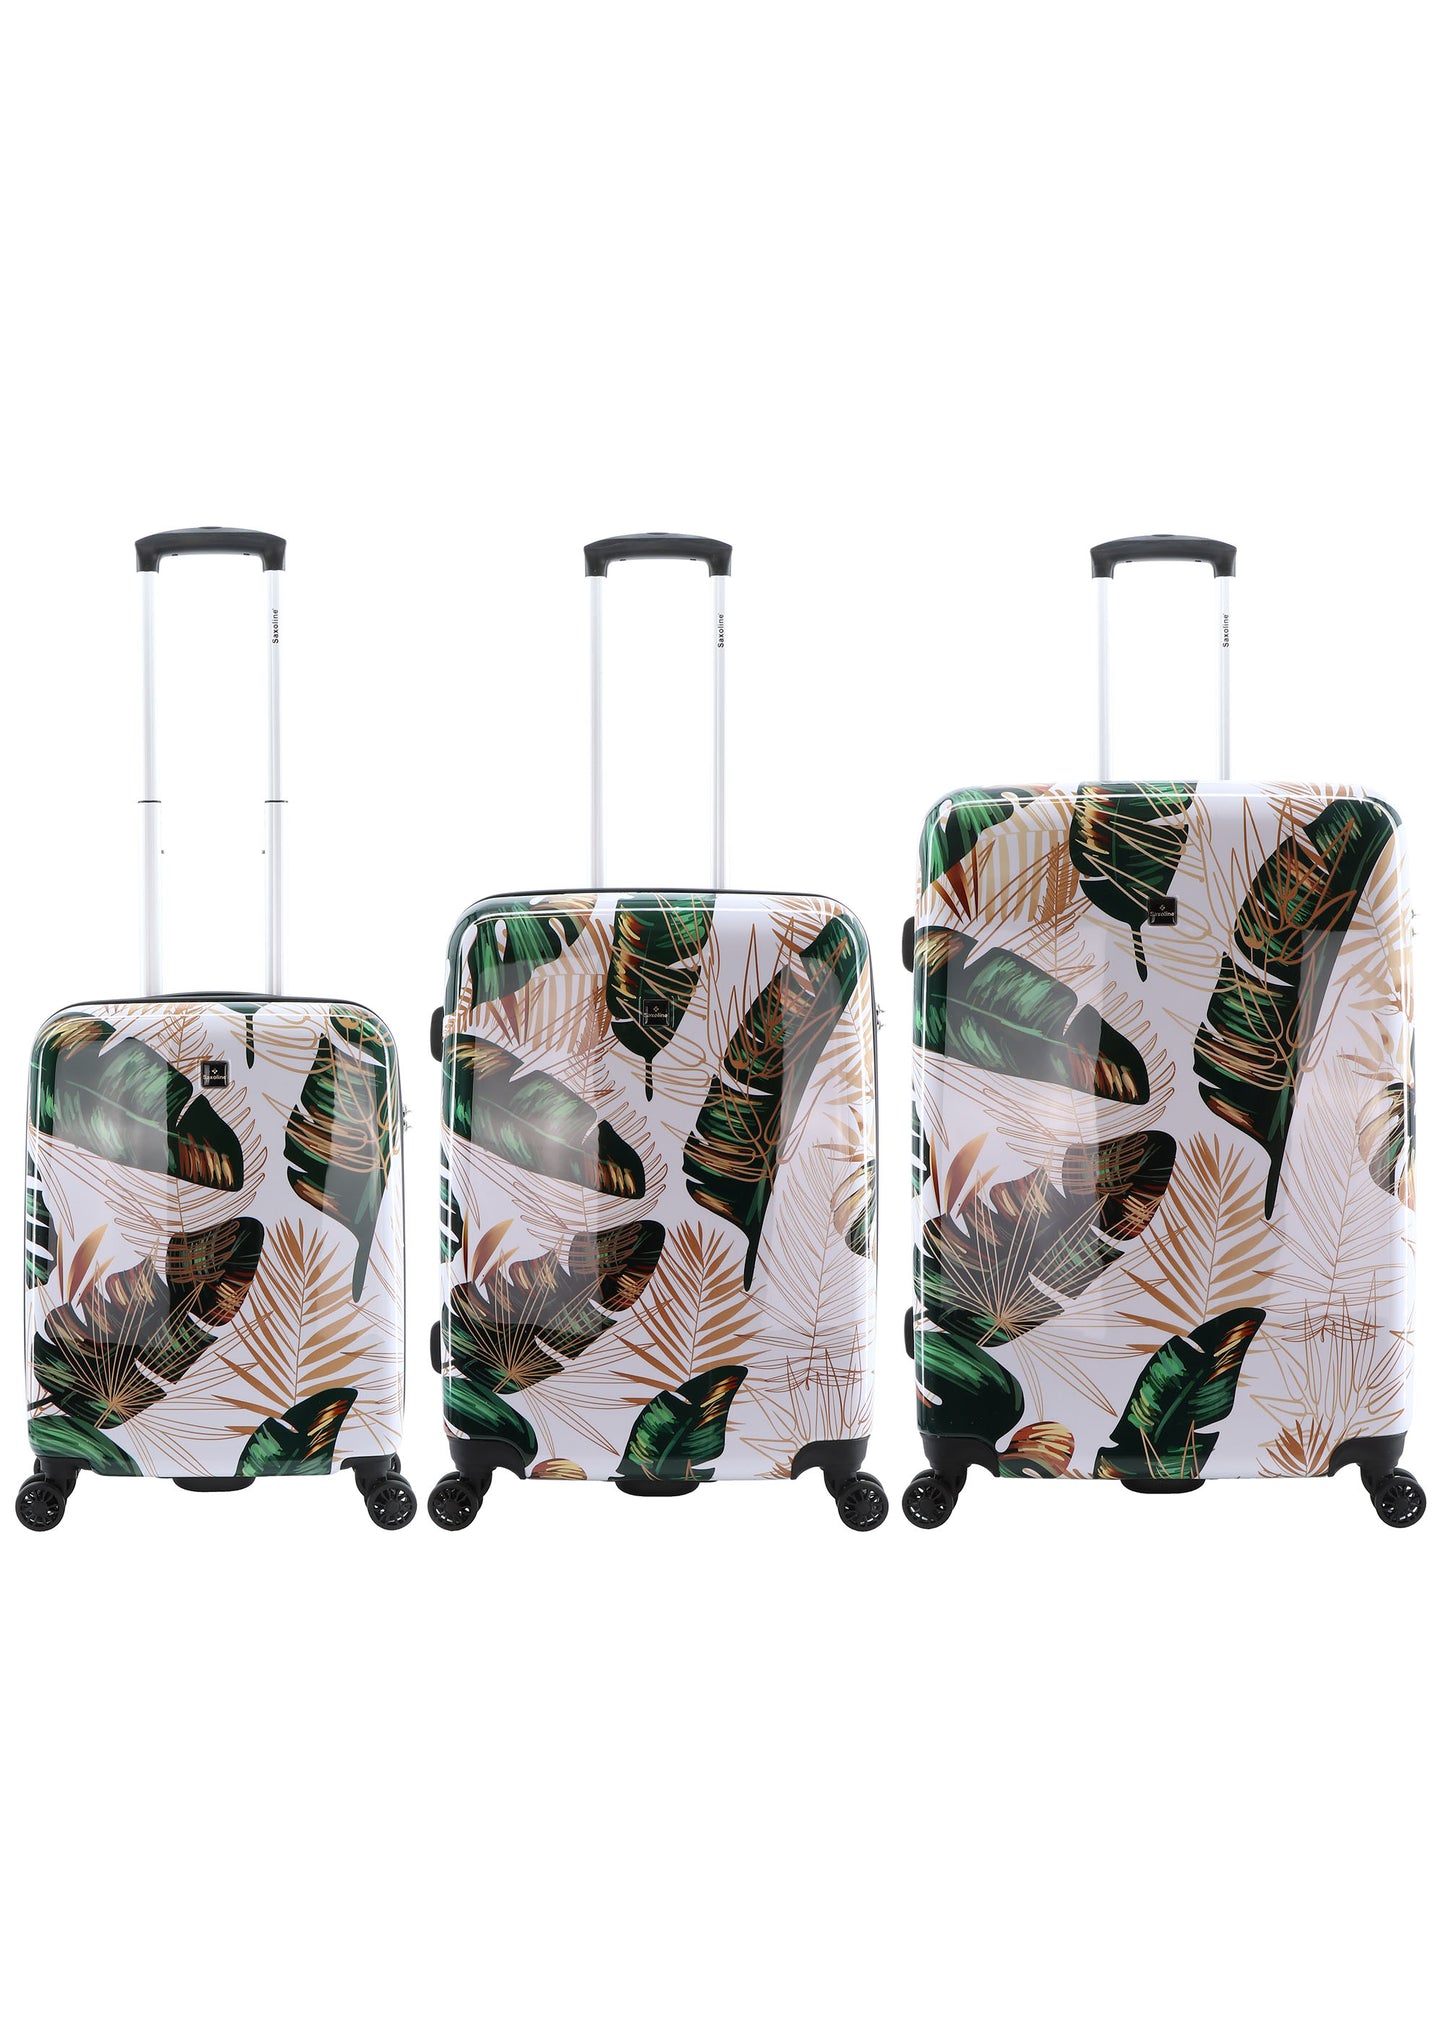 Saxoline Ensemble de valises rigides 3 pièces / Ensemble de valises de voyage / Ensemble de chariots - Imprimé forêt vierge